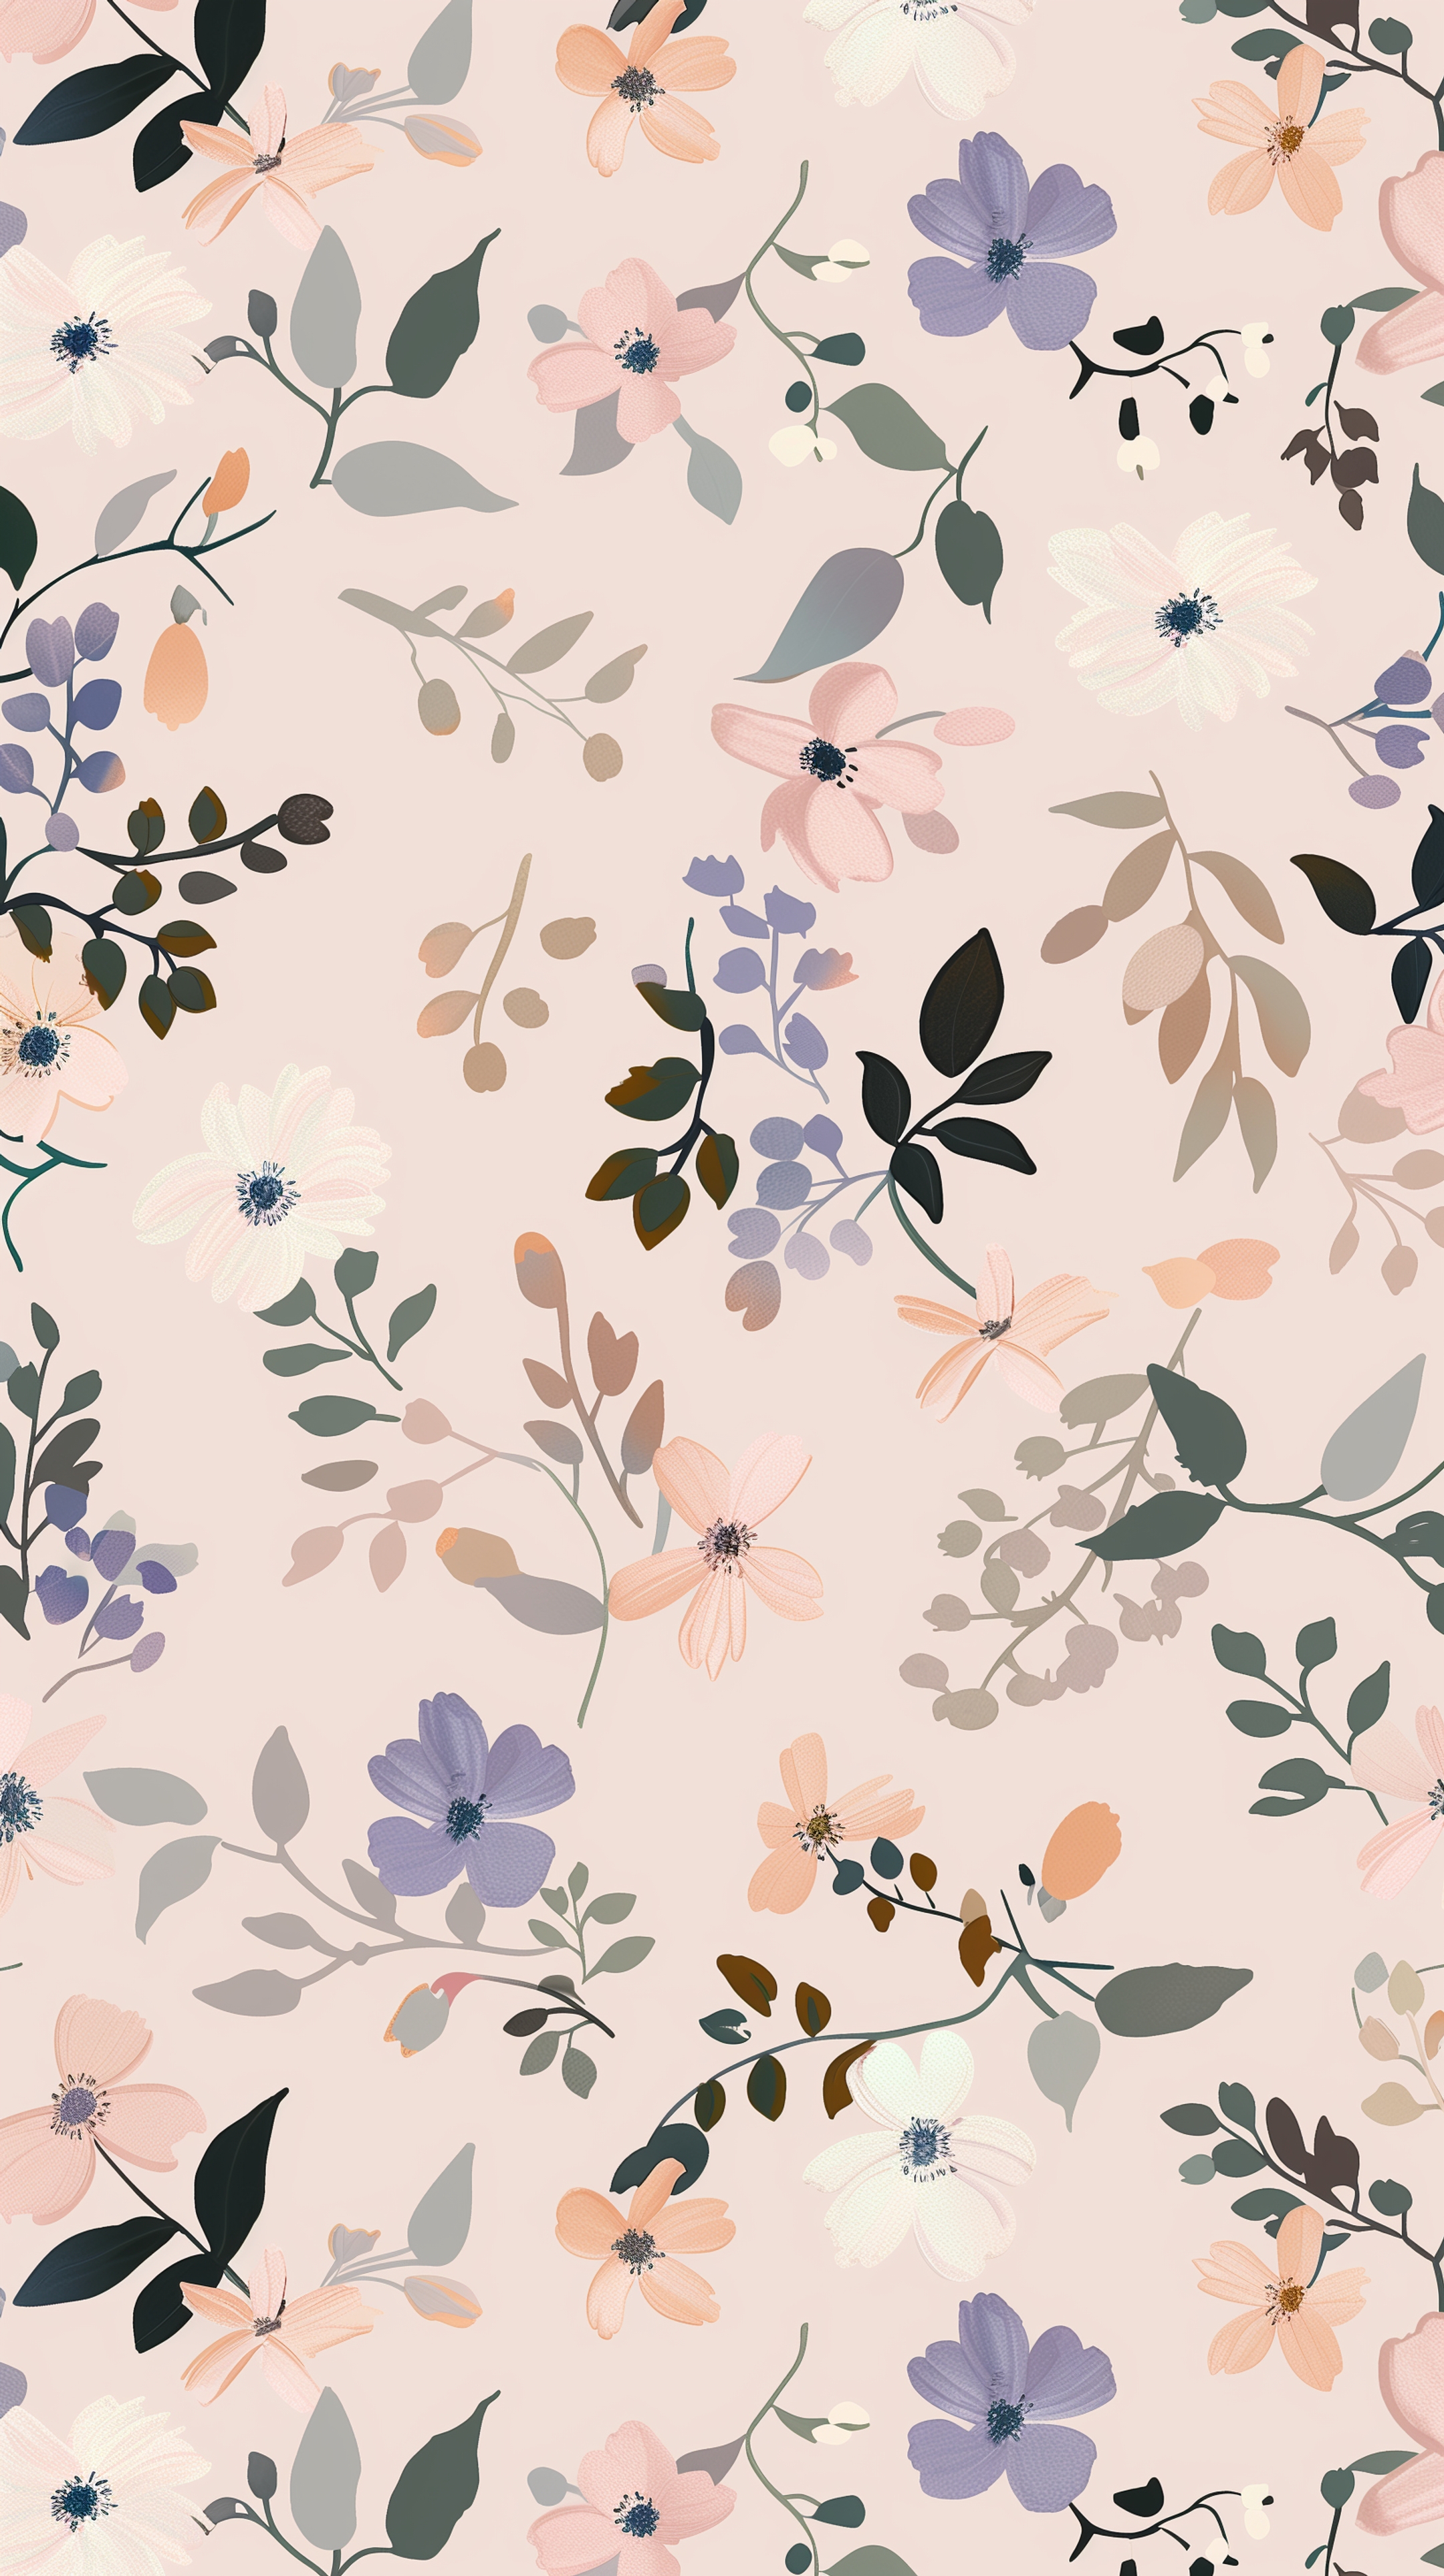 Floral Beauty In Soft Pastel Colors Wallpaper[2a9953e800d64ce283ef]